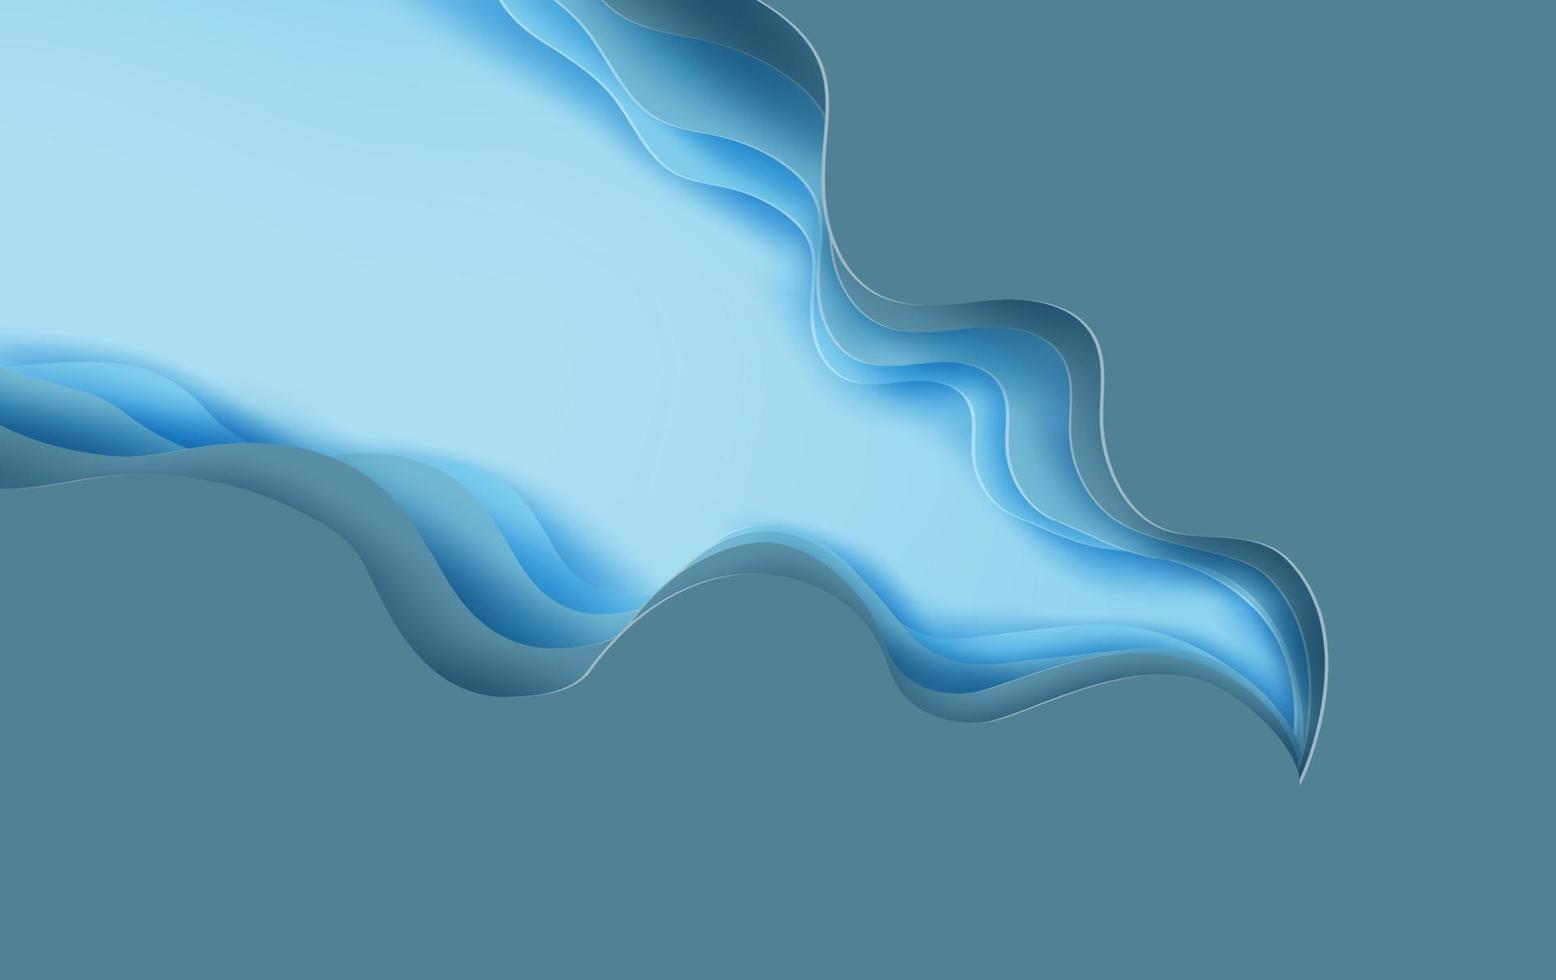 3d Papier Kunst von abstrakt Kurve Blau hintergrund.blau abstrakt Papier Welle Schicht Schnitt hintergrund.kreativ Papier Kunst Stil von Startseite Design Idee zum Geschäft Banner Vorlage und Material design.vektor. vektor